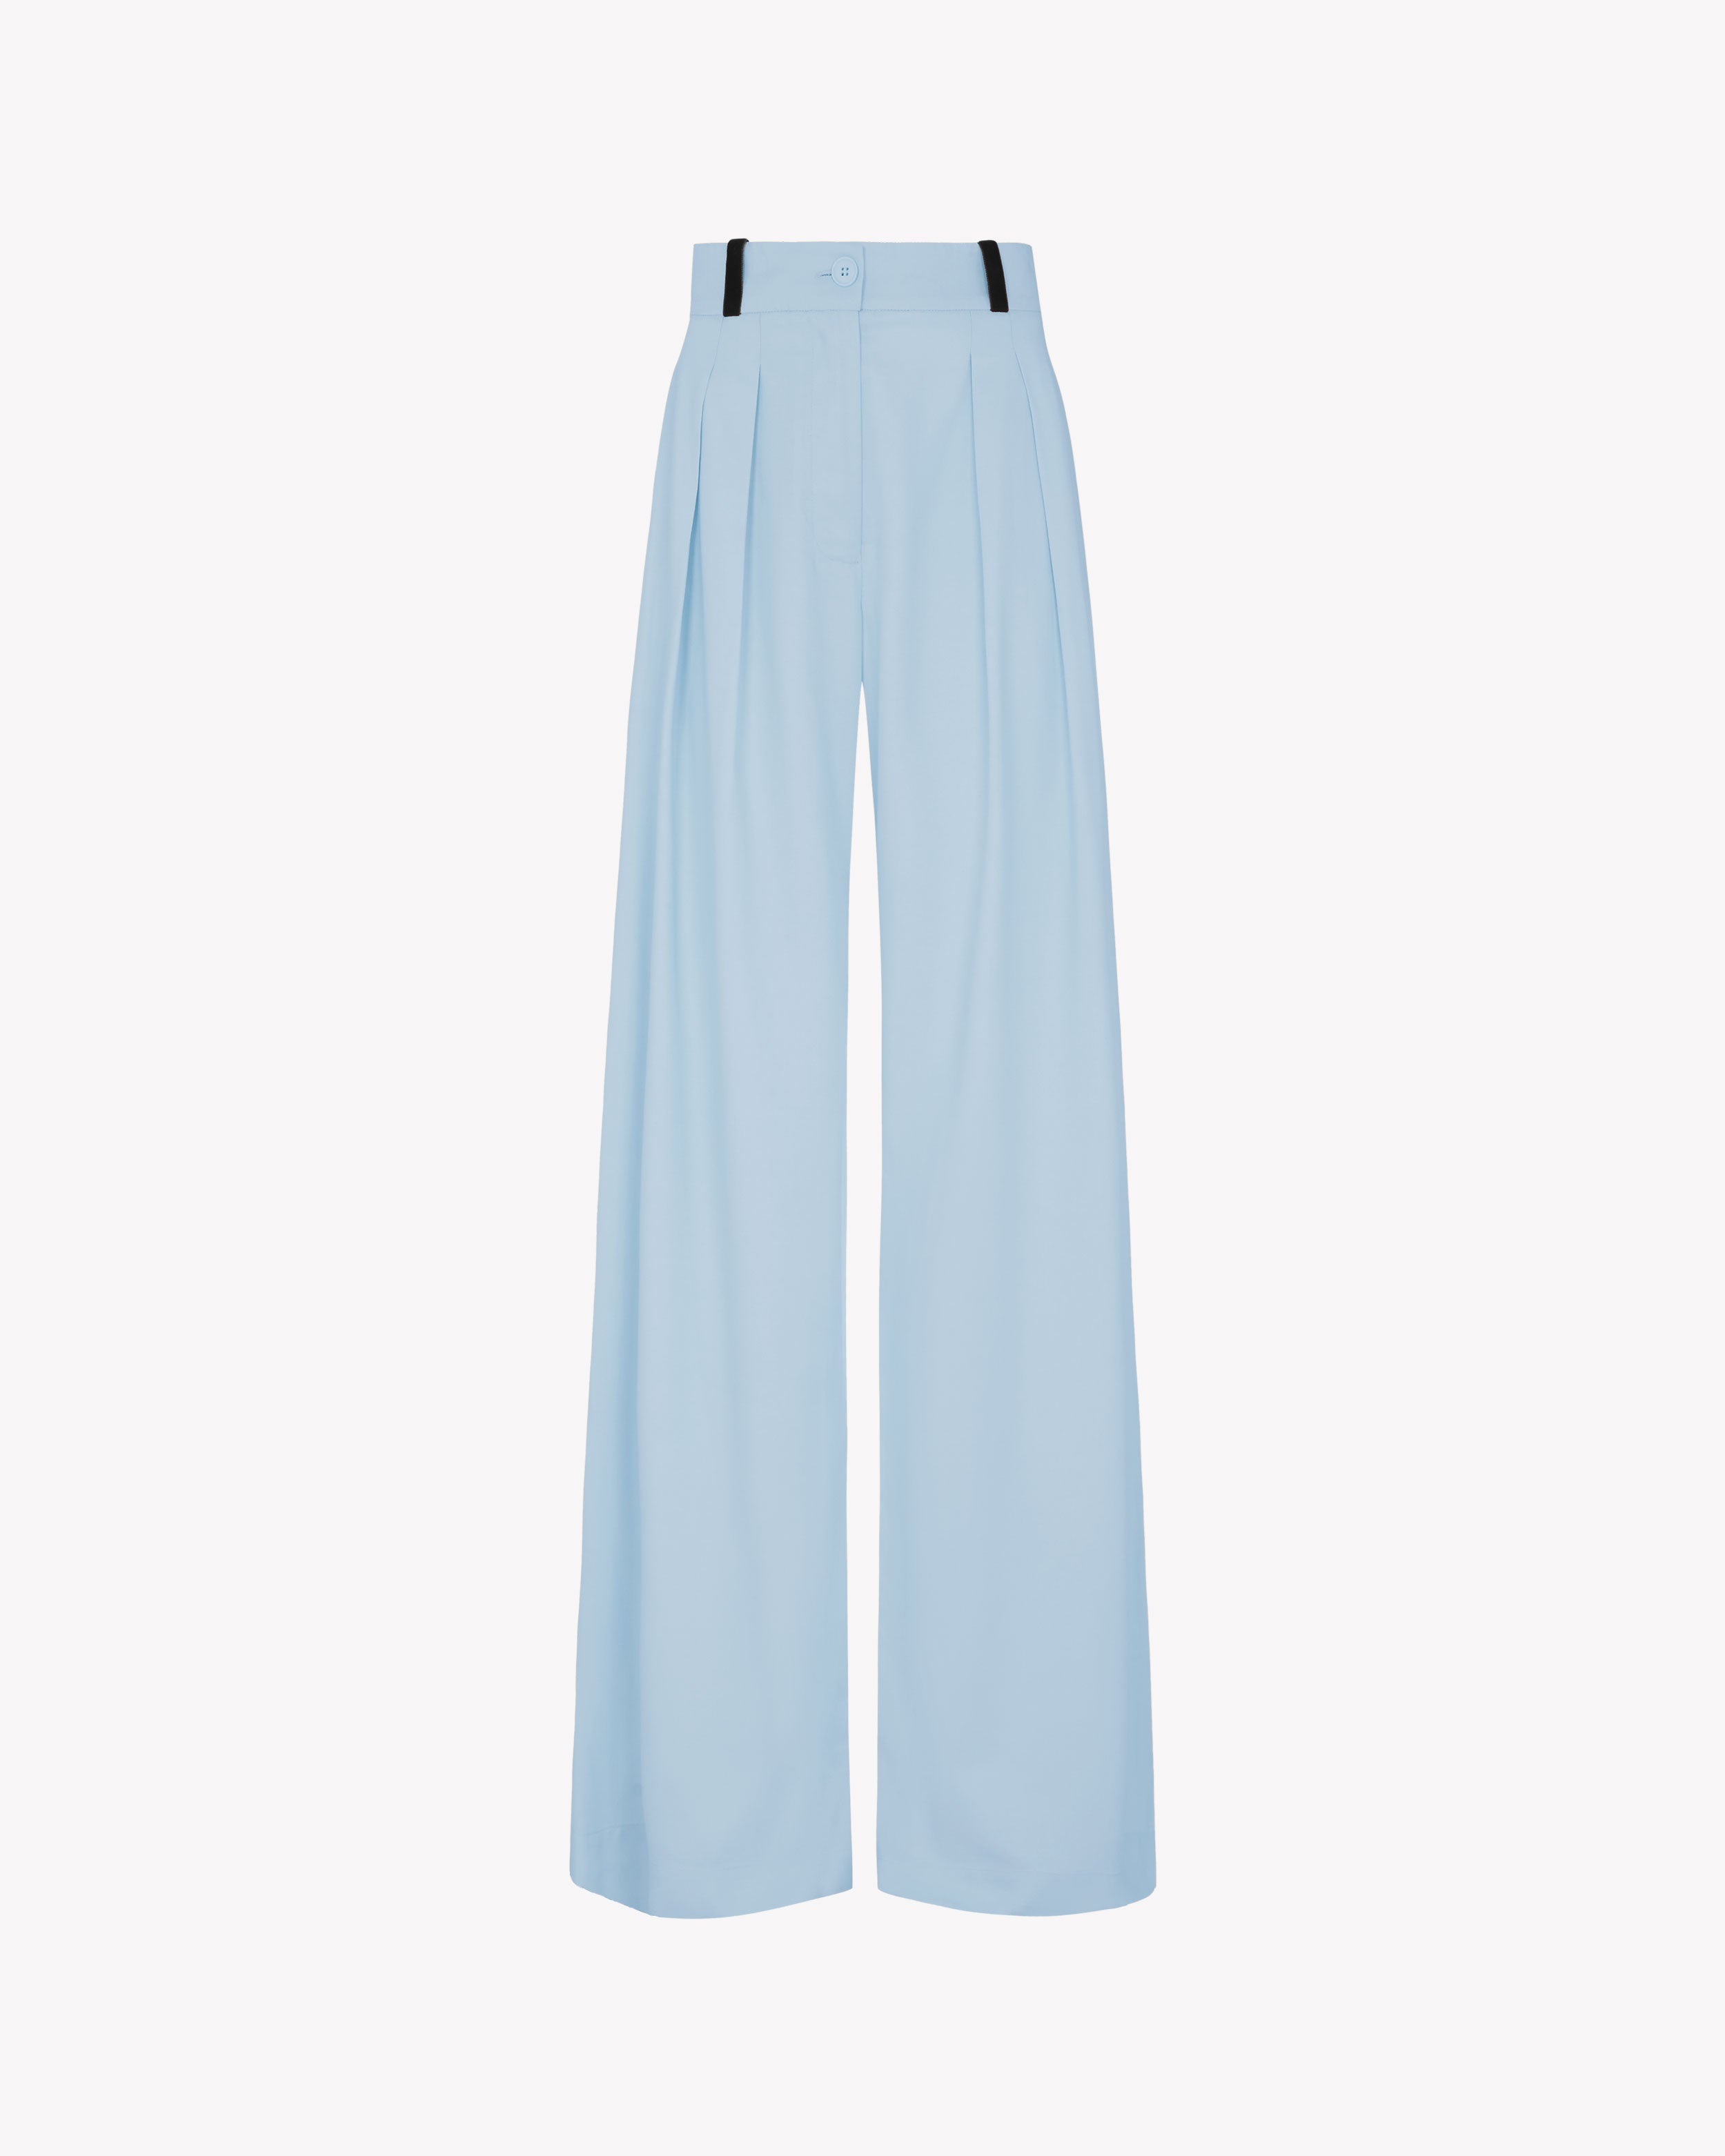 Sky Blue Gucci Trousers S/M – OMNIA